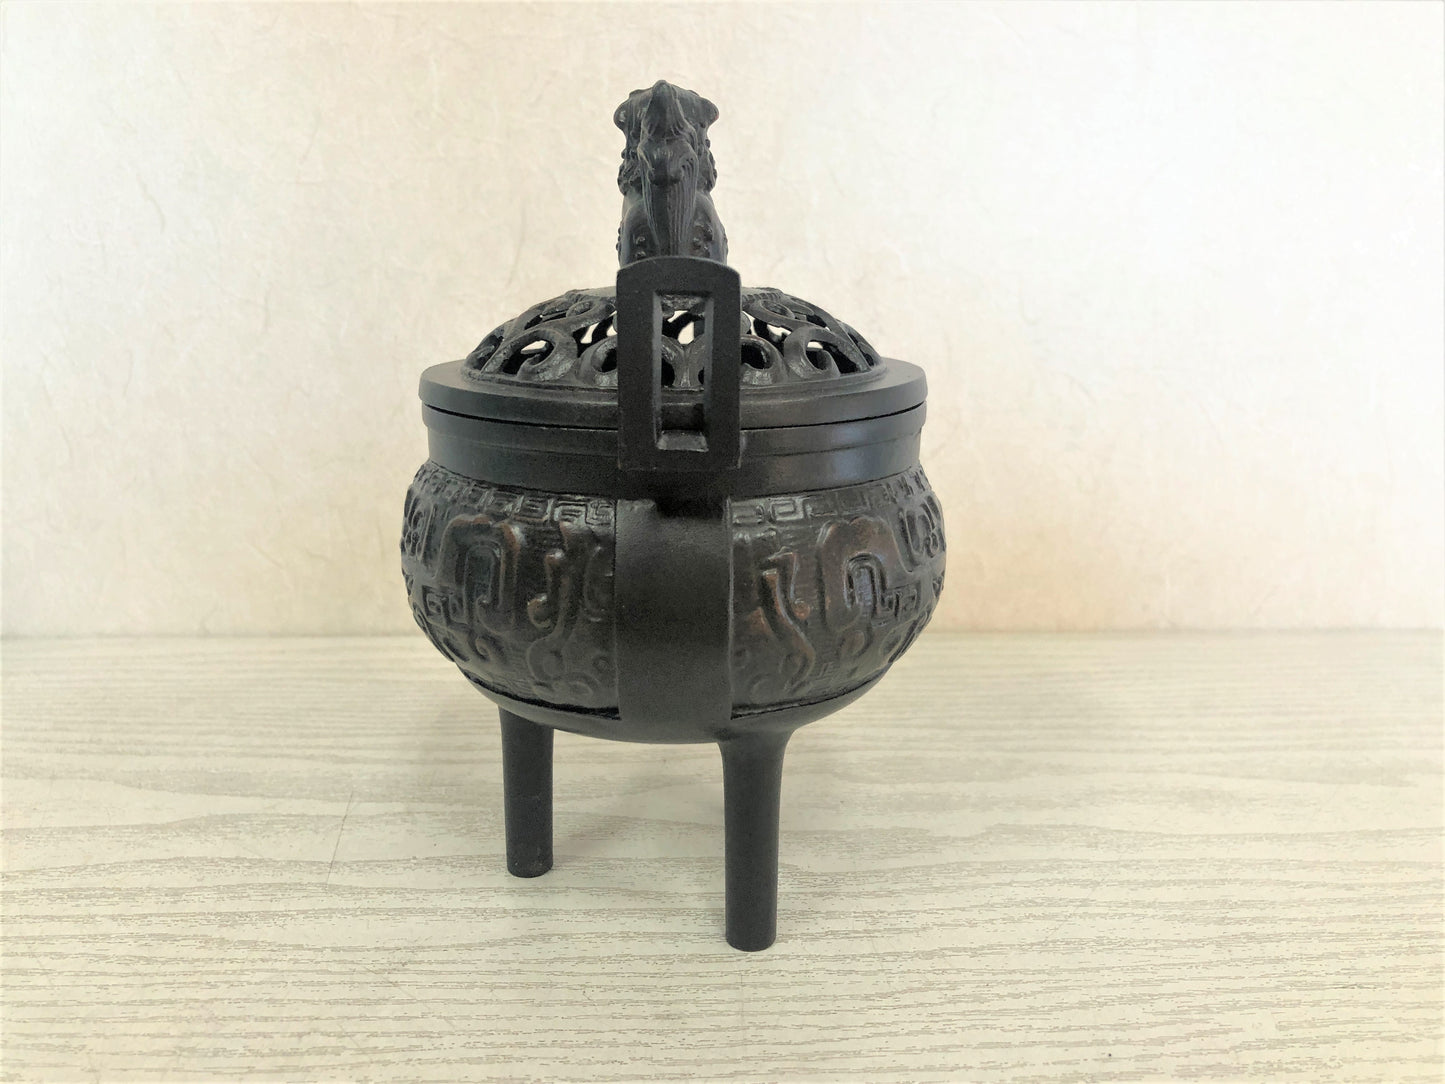 Y3785 KOURO Copper signed box Japan antique fragrance aroma incense burner